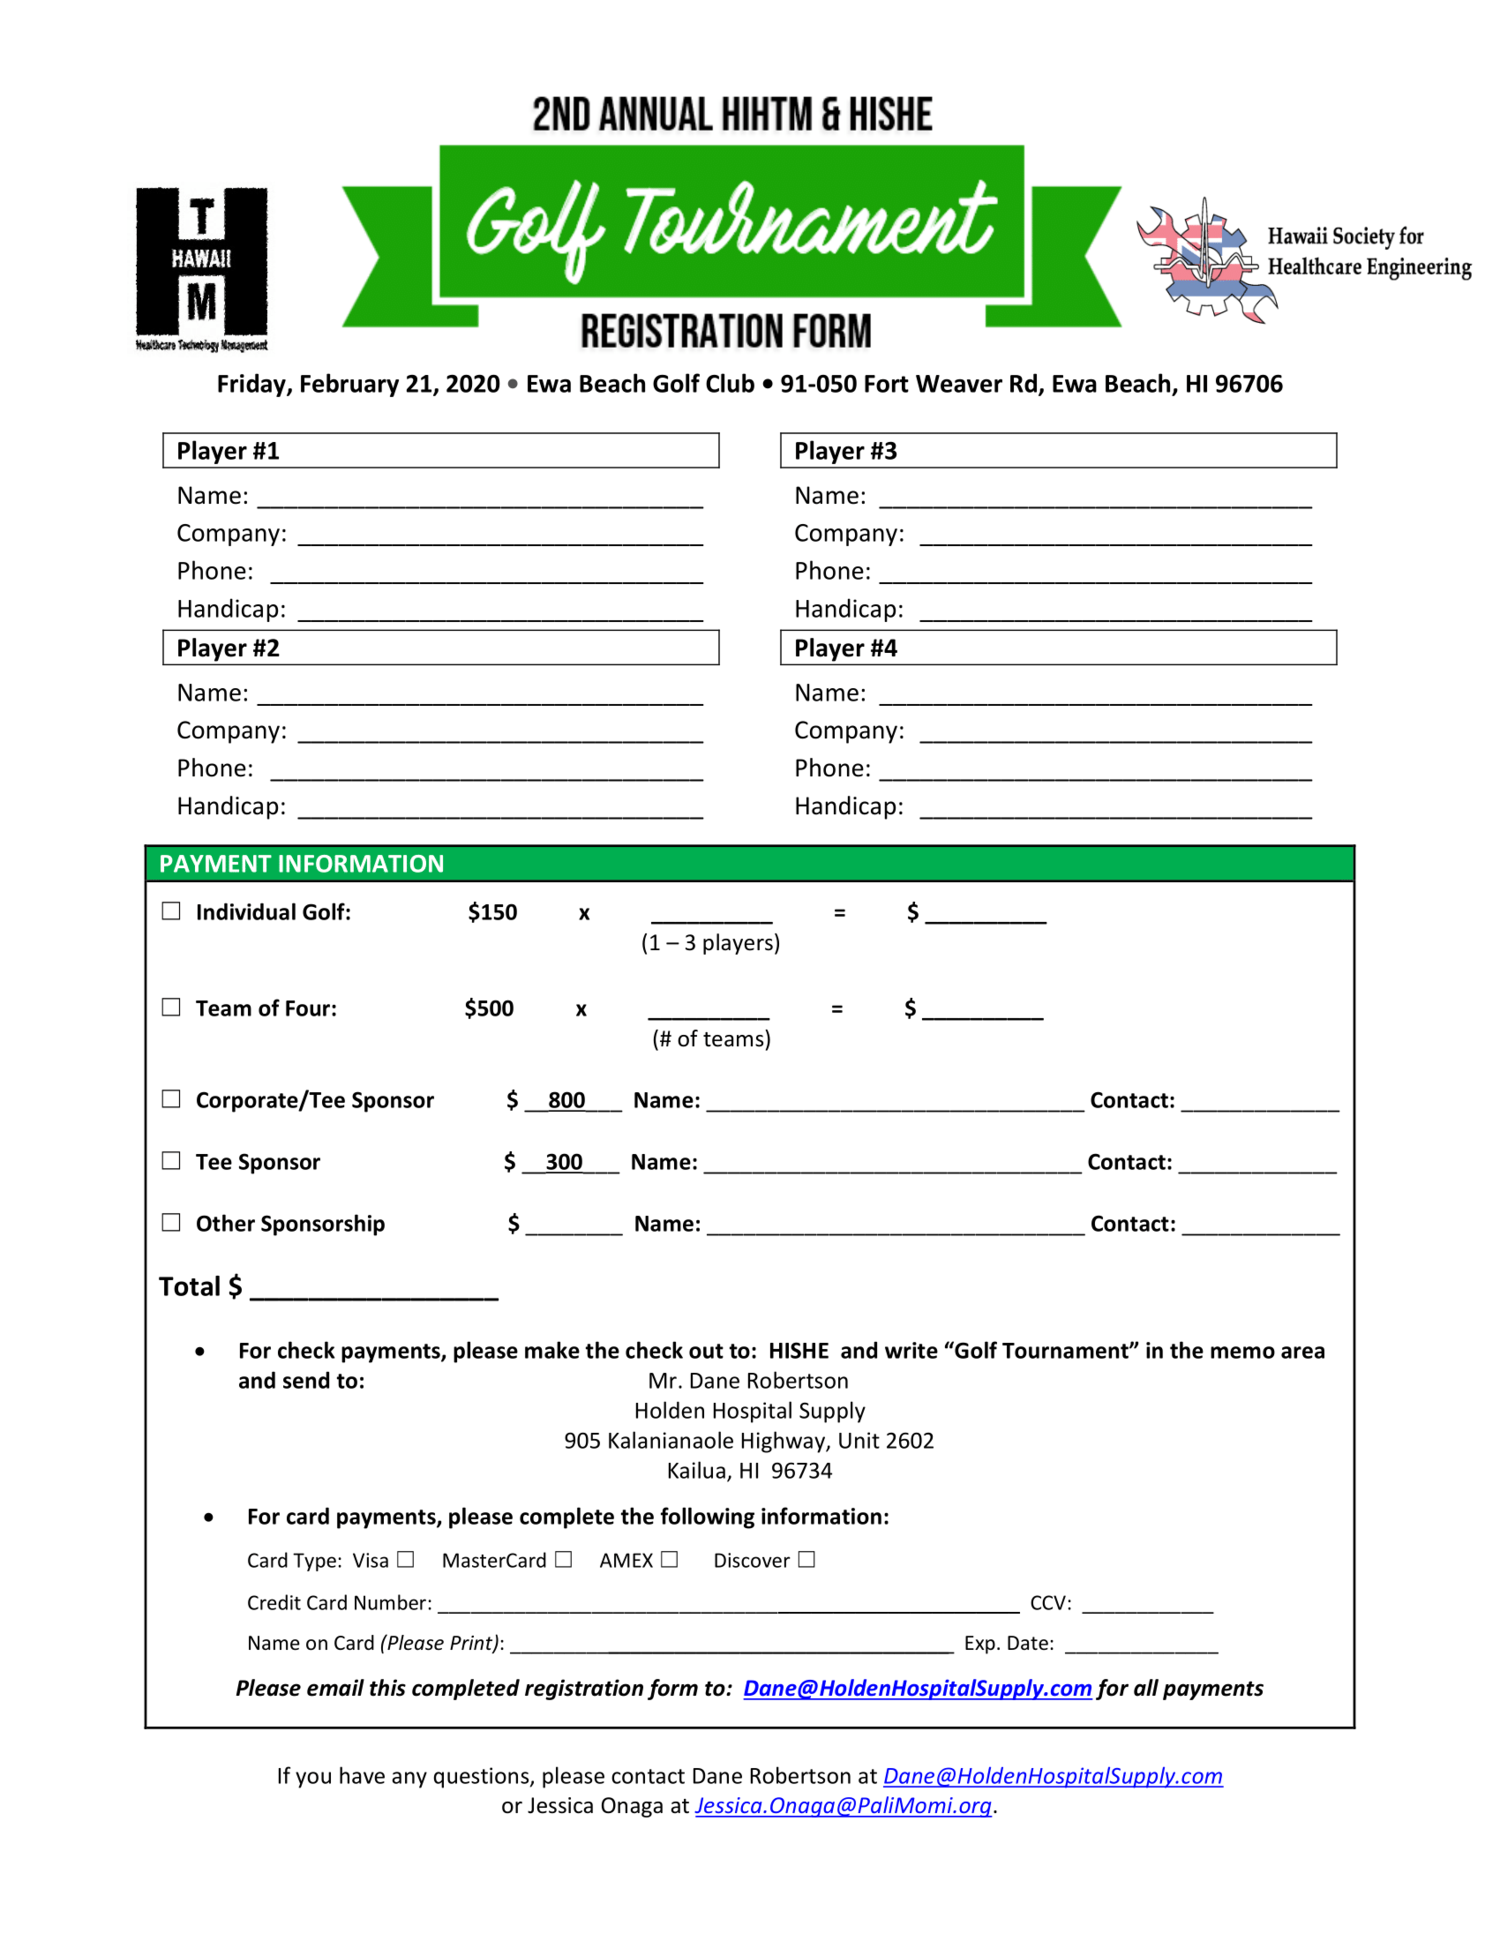 golf-tournament-registration-form-hihtm